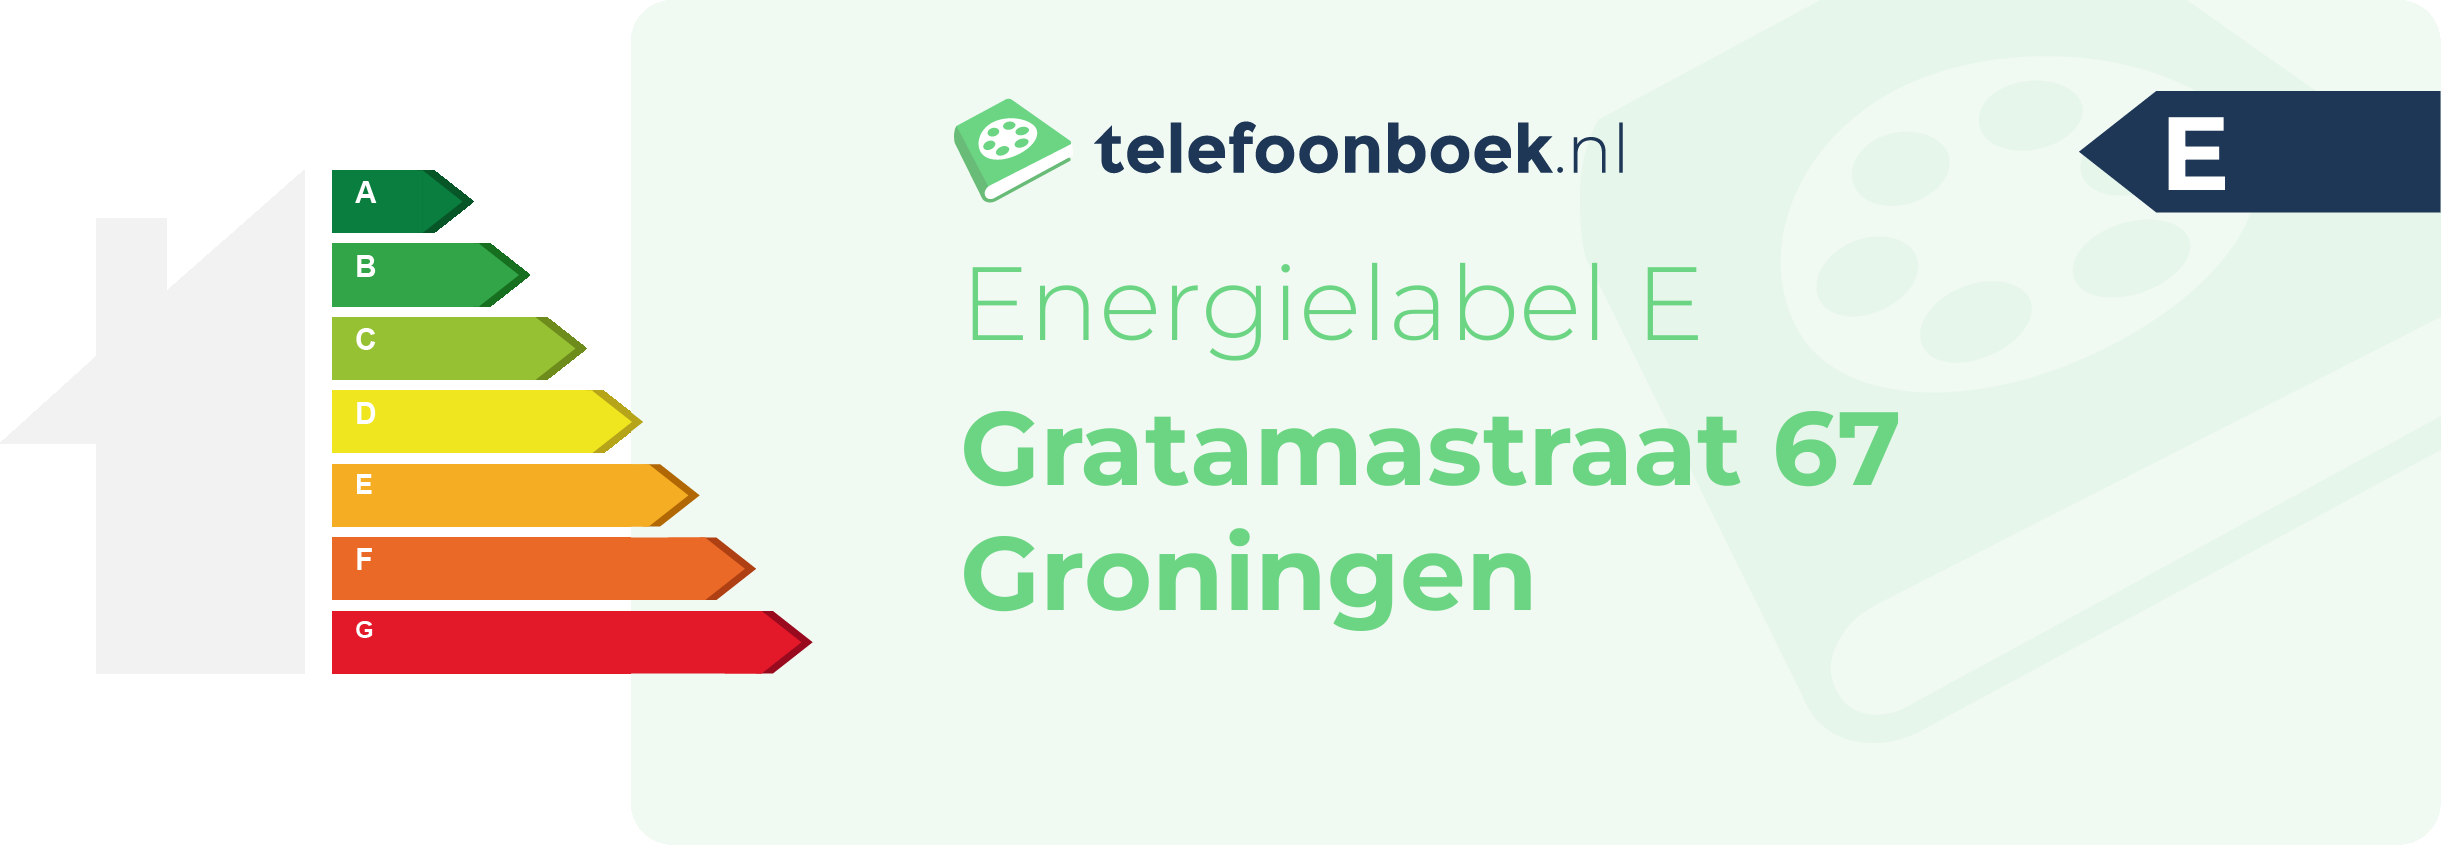 Energielabel Gratamastraat 67 Groningen